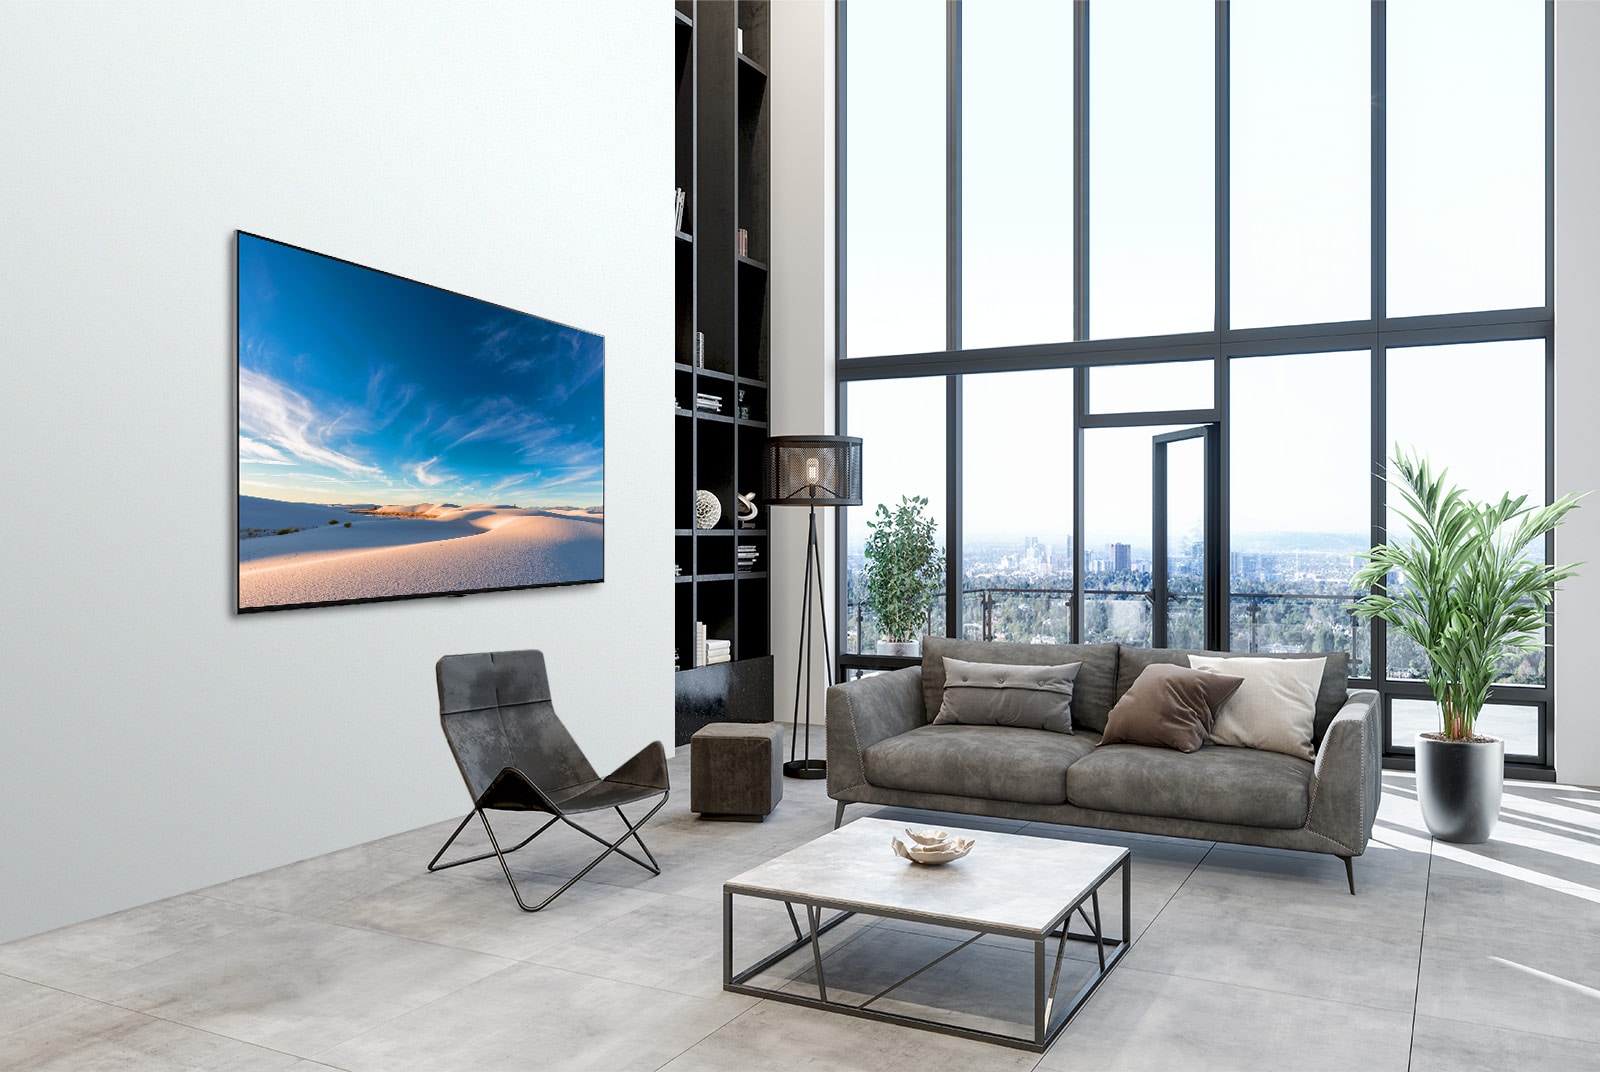 TV LG QNED appesa a una parete in un interno moderno.